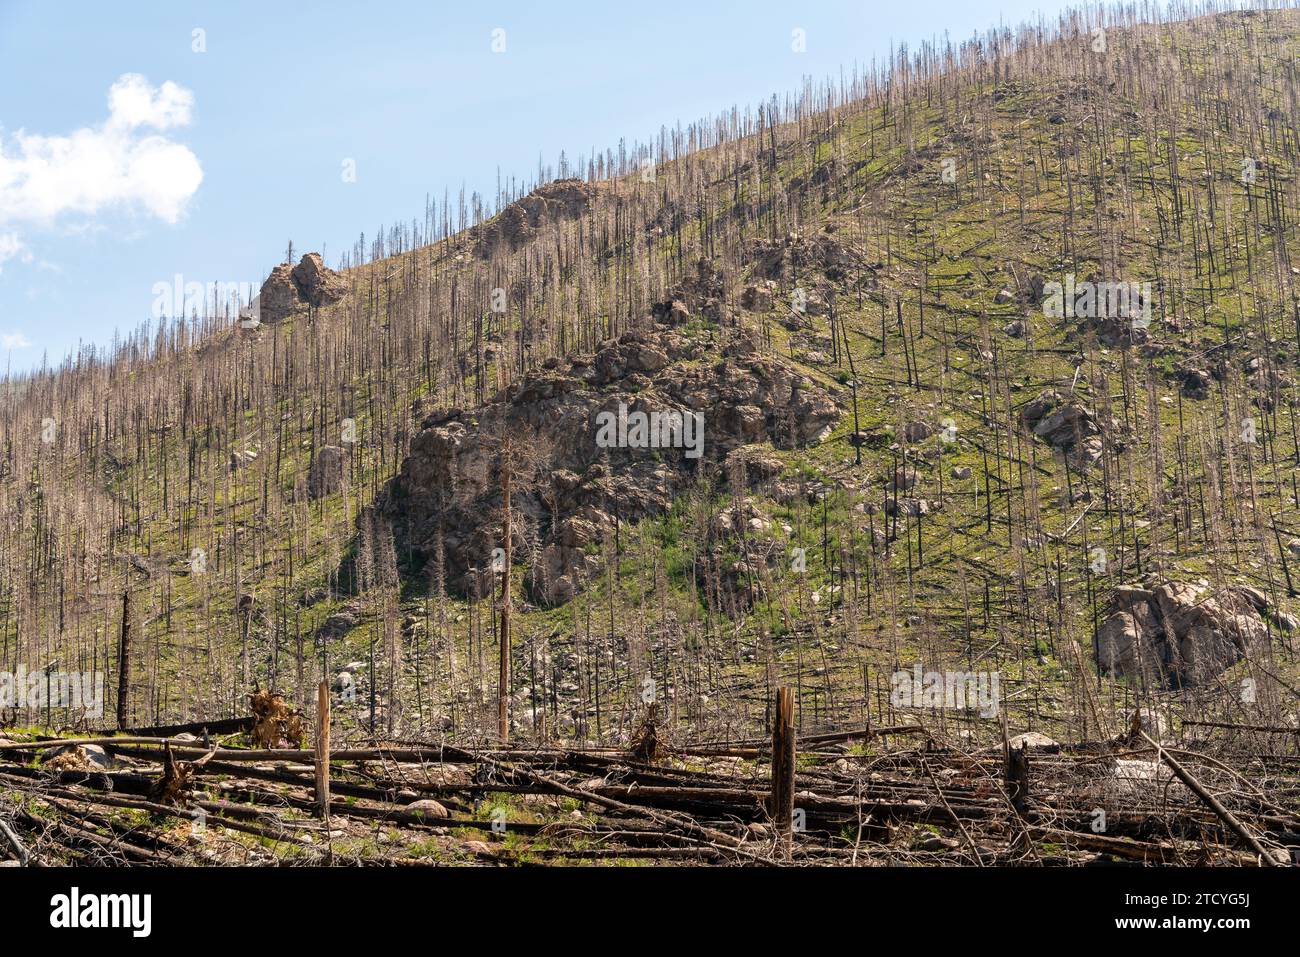 Une colline abrupte montre les séquelles des feux de forêt, avec de nouveaux espaces verts émergeant parmi les vestiges carbonisés du parc national des montagnes Rocheuses. Banque D'Images